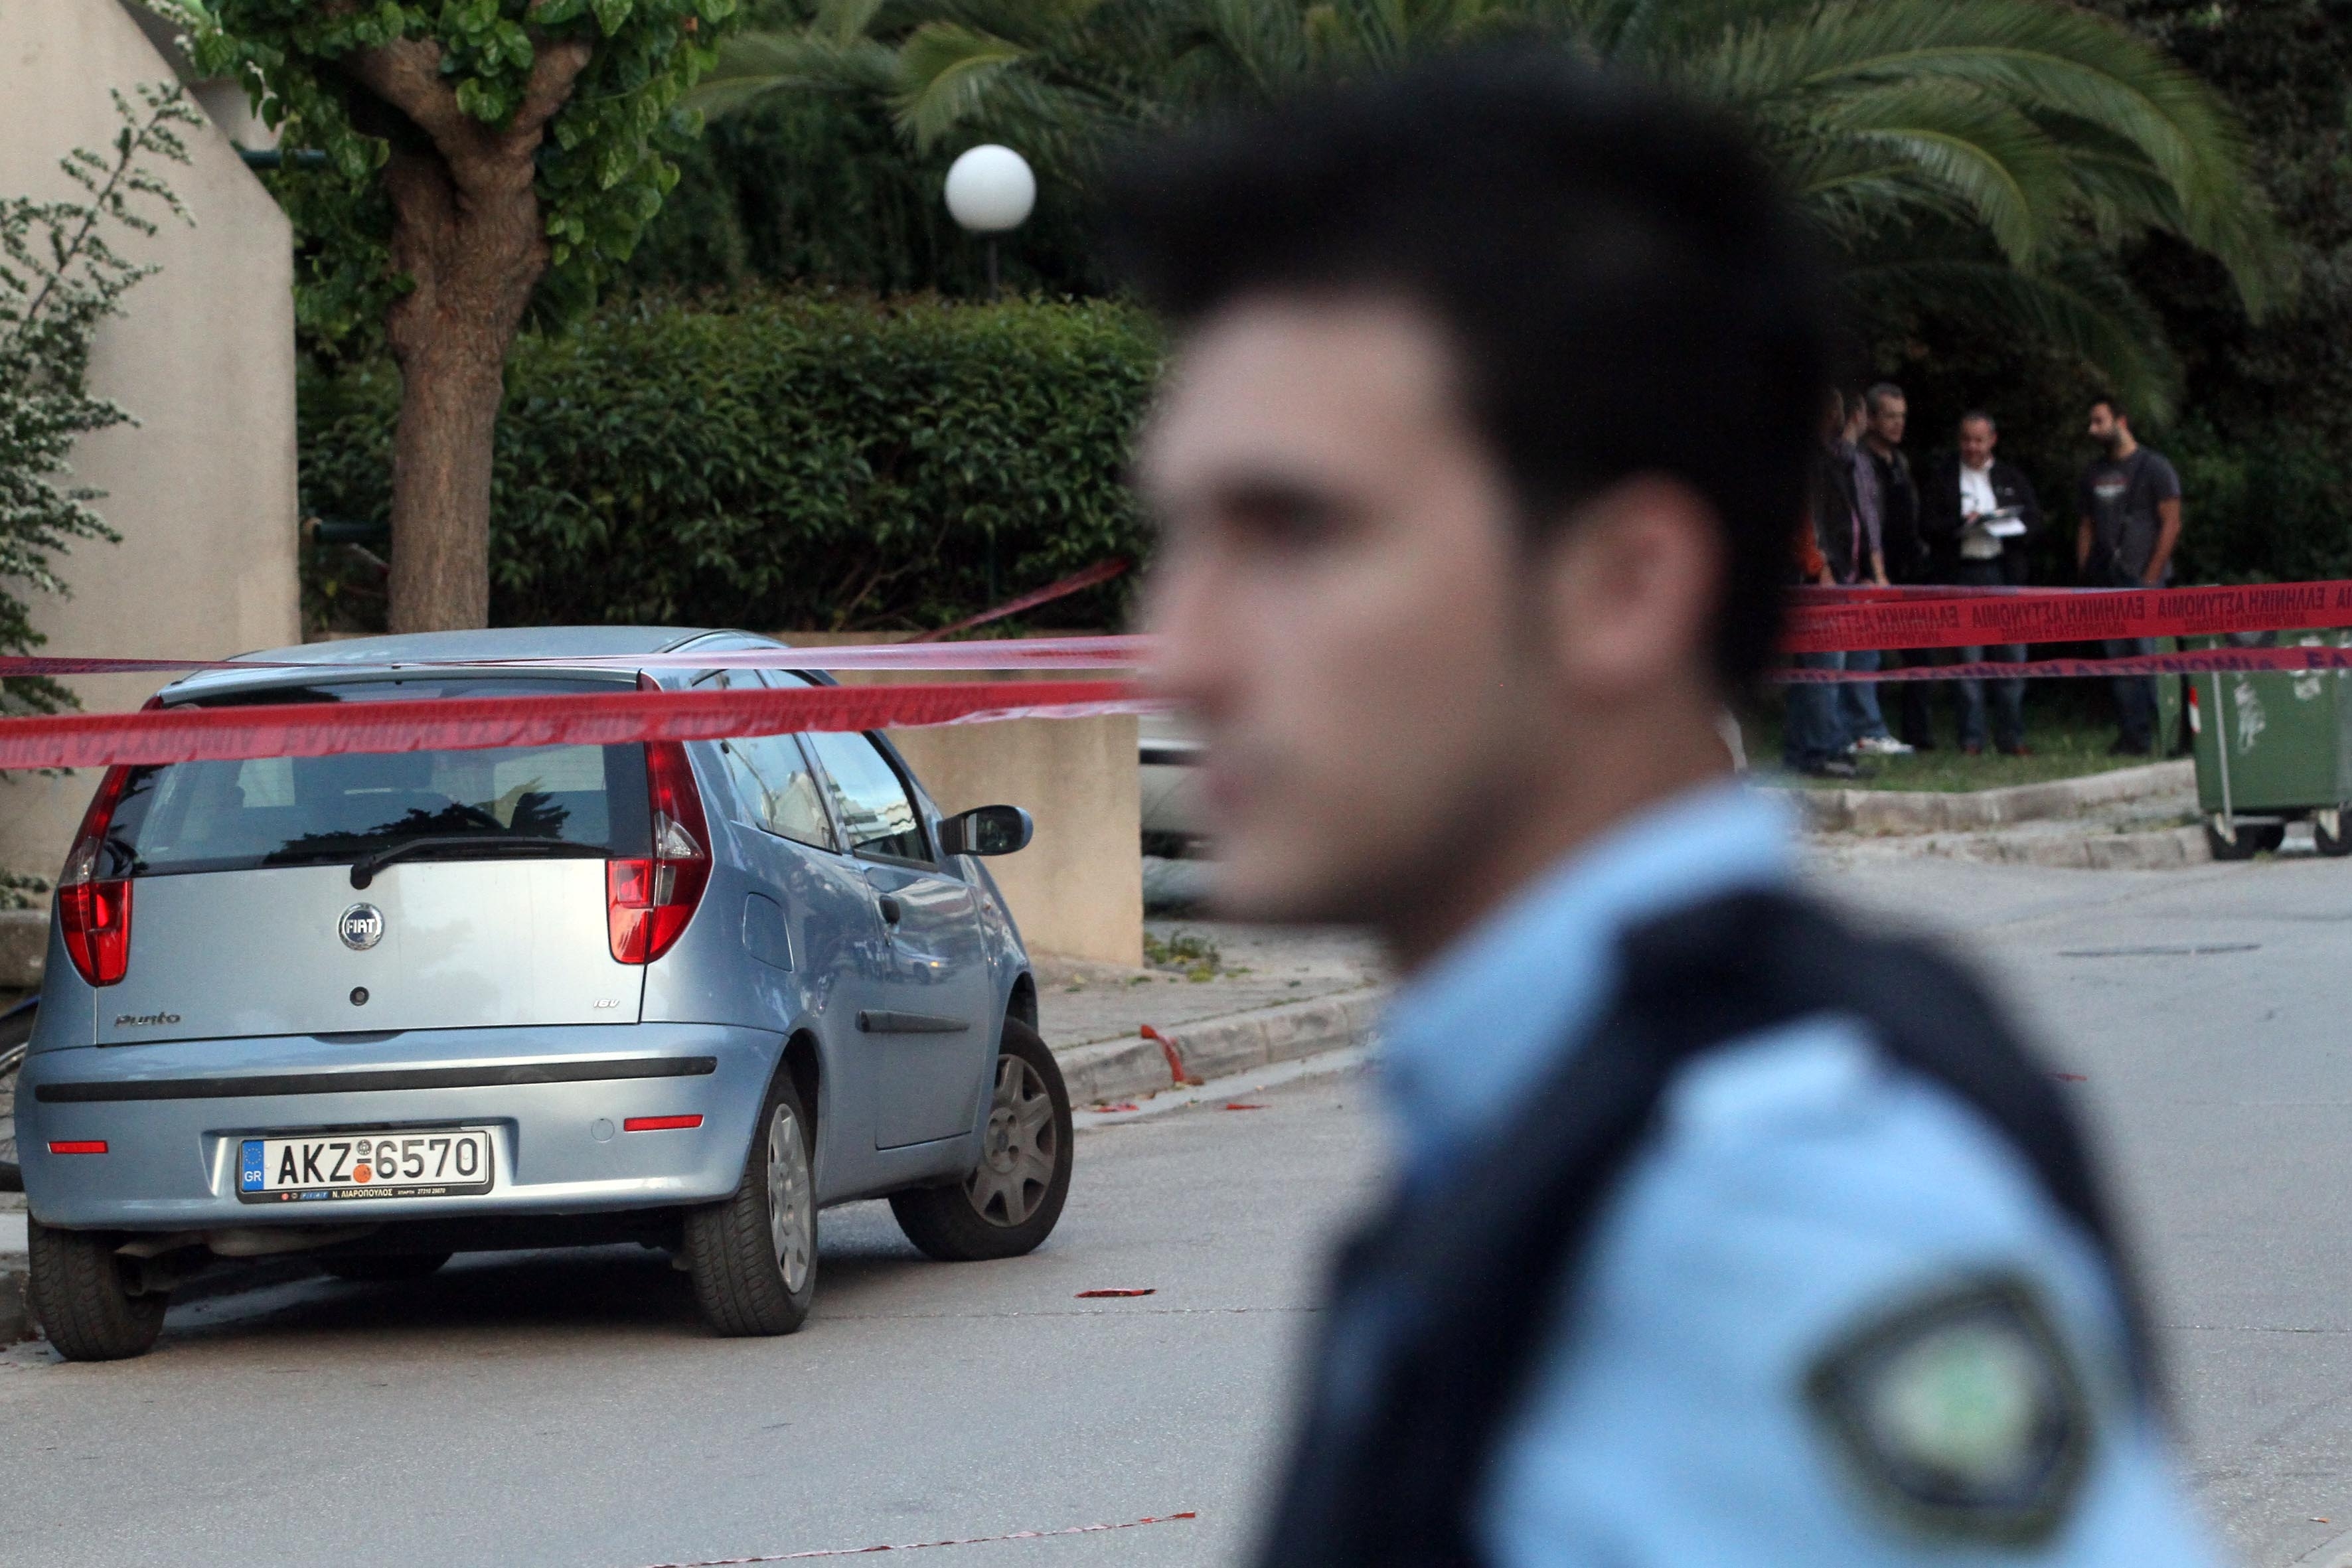 Θεσσαλονίκη: Αστυνομικός έκλεβε εργαλεία από super market